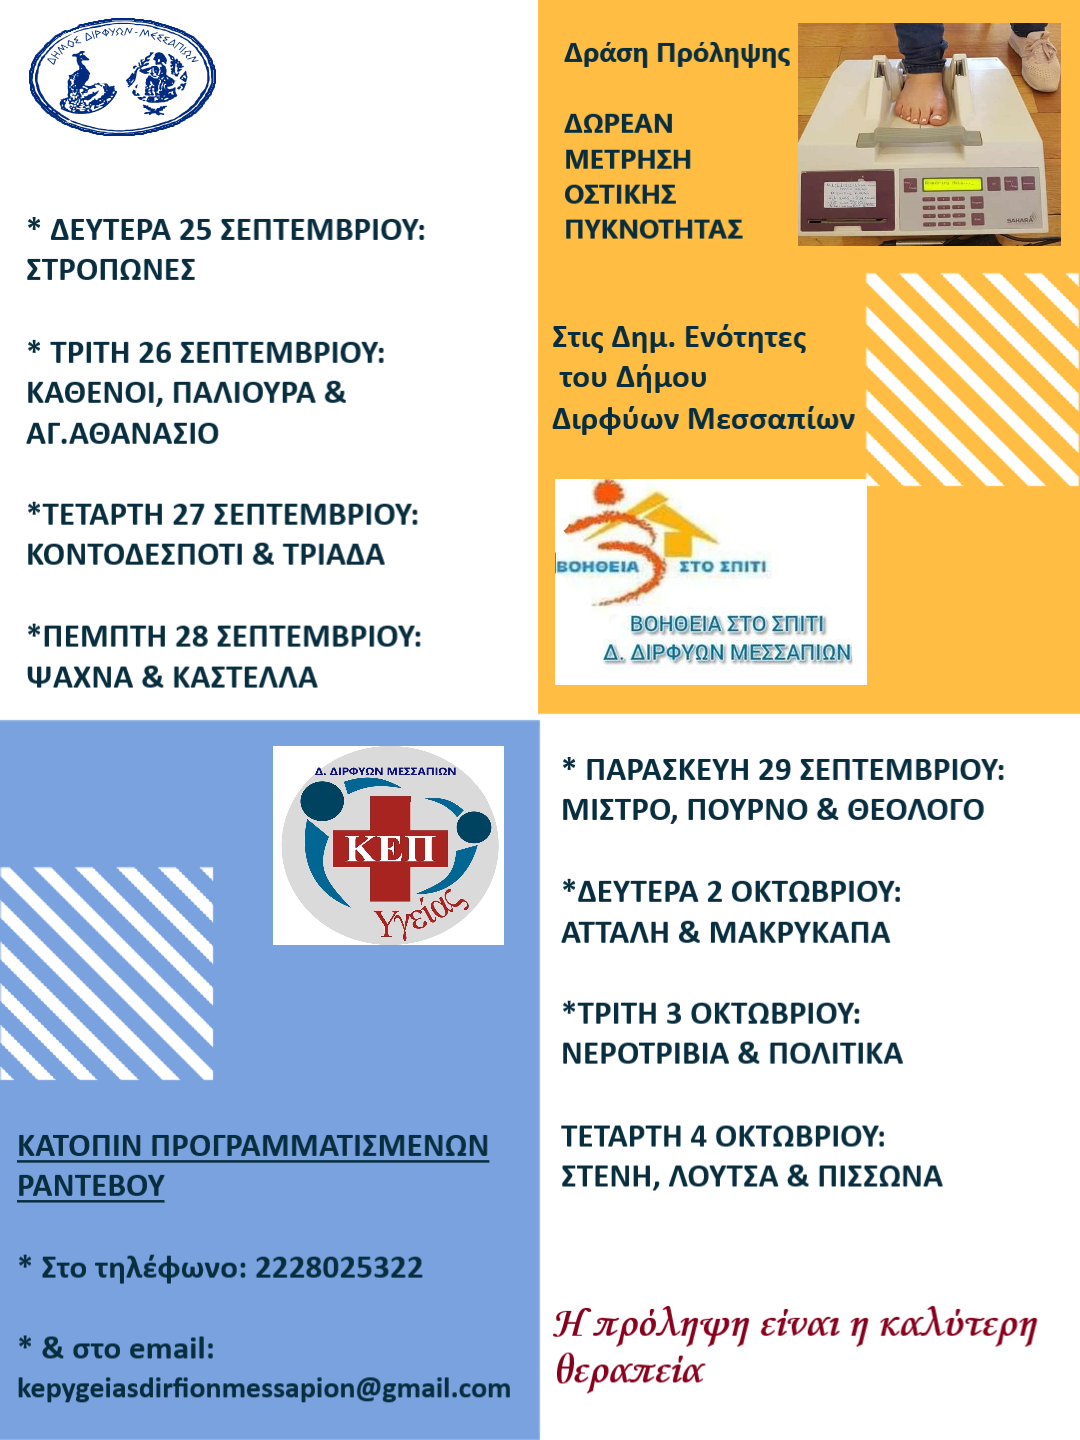 Δράση προληπτικού ελέγχου για την οστεοπόρωση διοργανώνει ο Δήμος Διρφύων Μεσαπίων (25/9-4/10)                       23